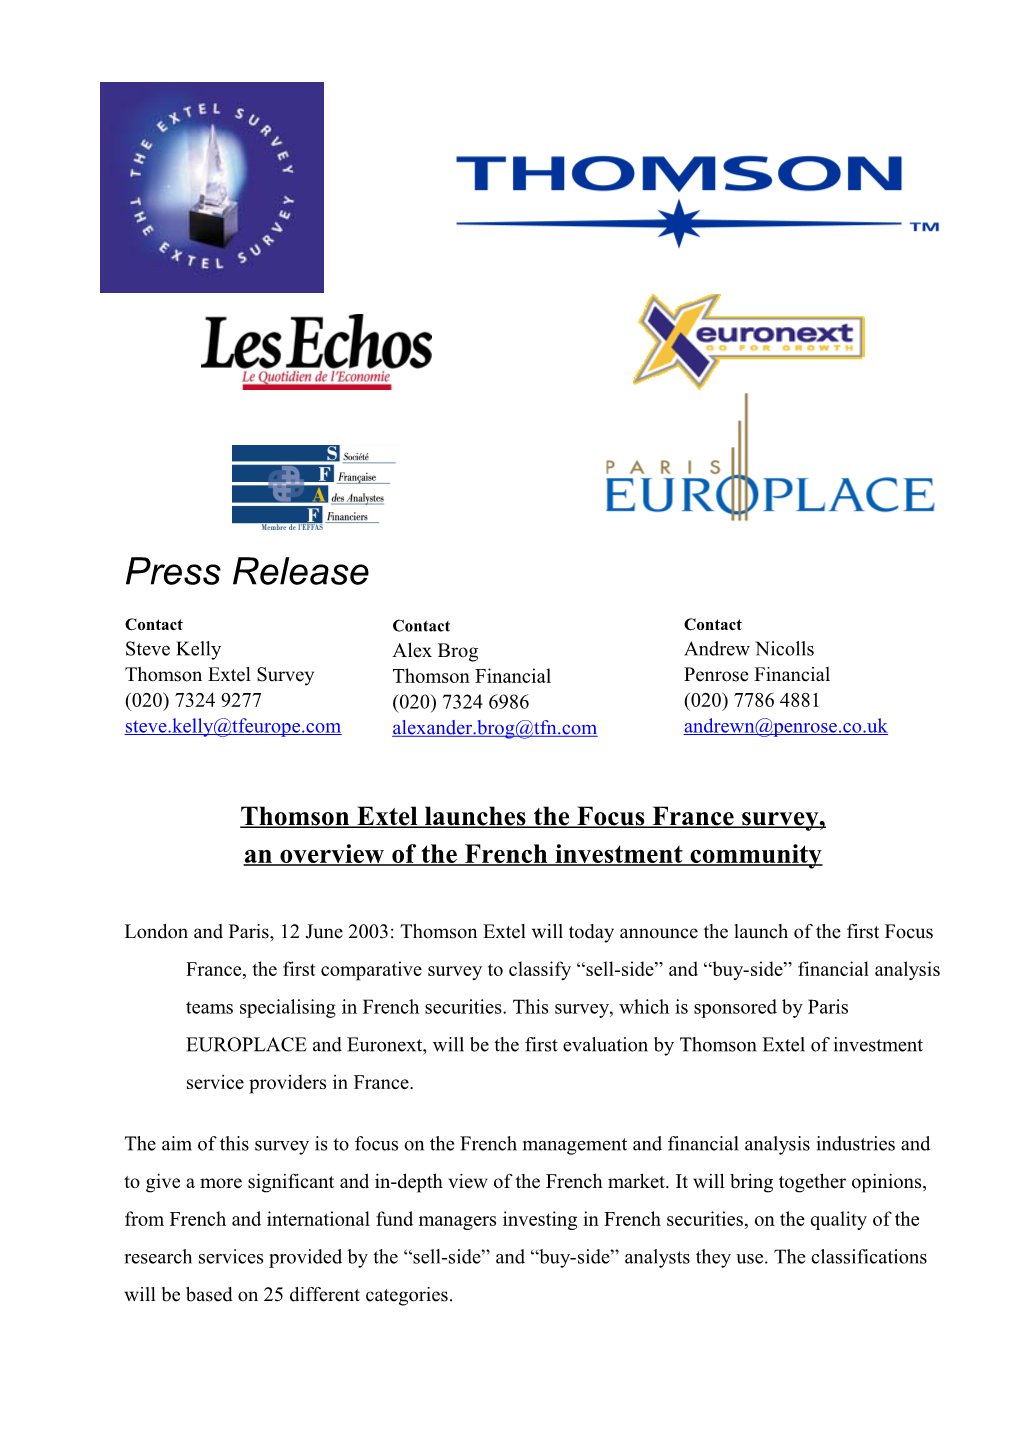 Thomson Extel Launches the Focus France Survey